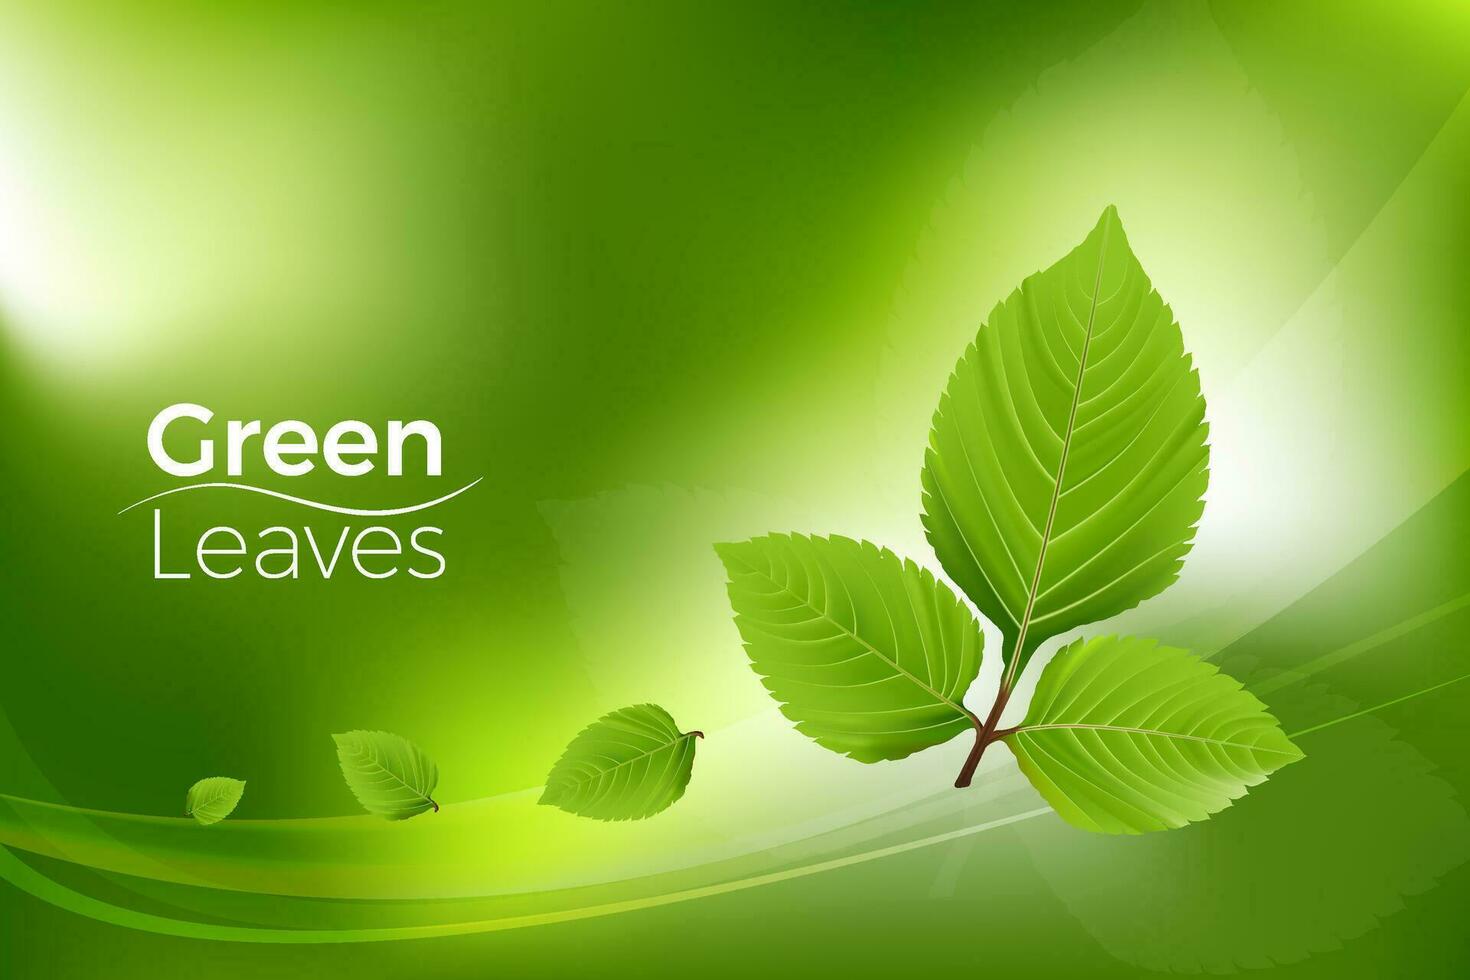 3d Grün Blätter realistisch Vektor auf Grün Luxus Hintergrund Gradient Gittergewebe, minimal Szene zum Produkte Vitrine, Beförderung Anzeige, Öko Umfeld. Sie können benutzt zum Marketing Förderung, drucken Anzeige.